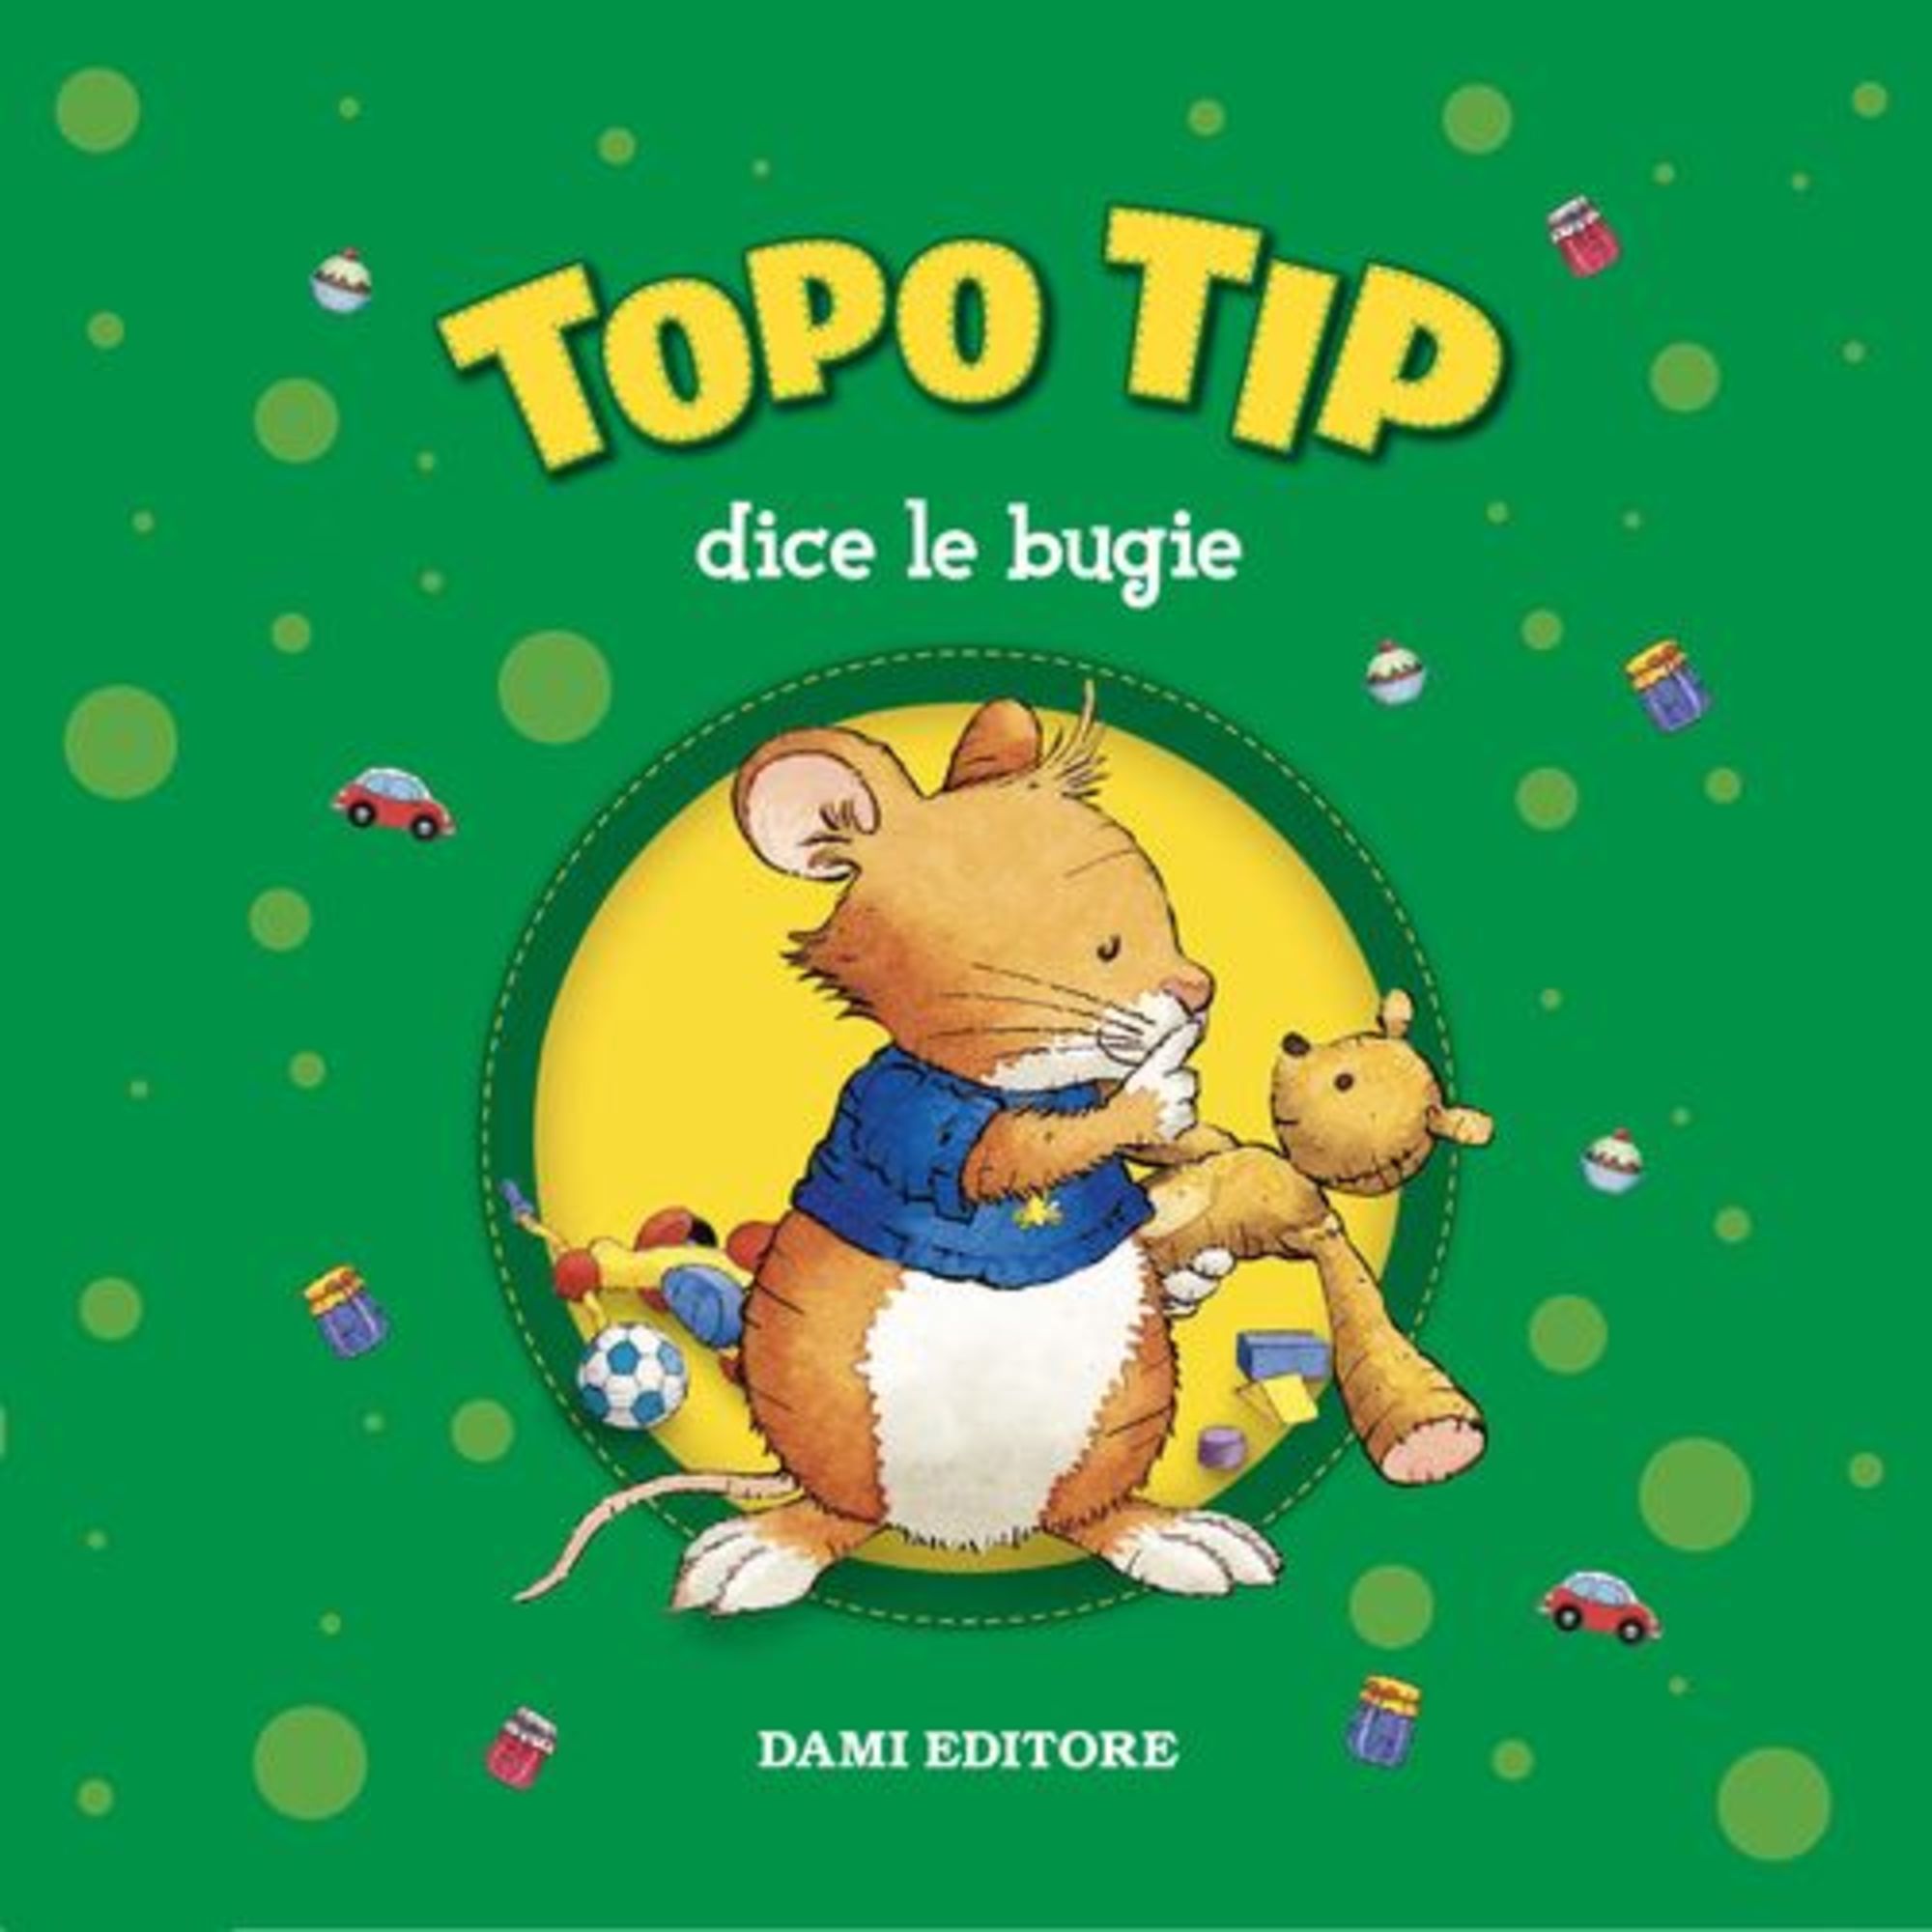 Topo Tip dice le bugie' von 'Anna Casalis' - Hörbuch-Download